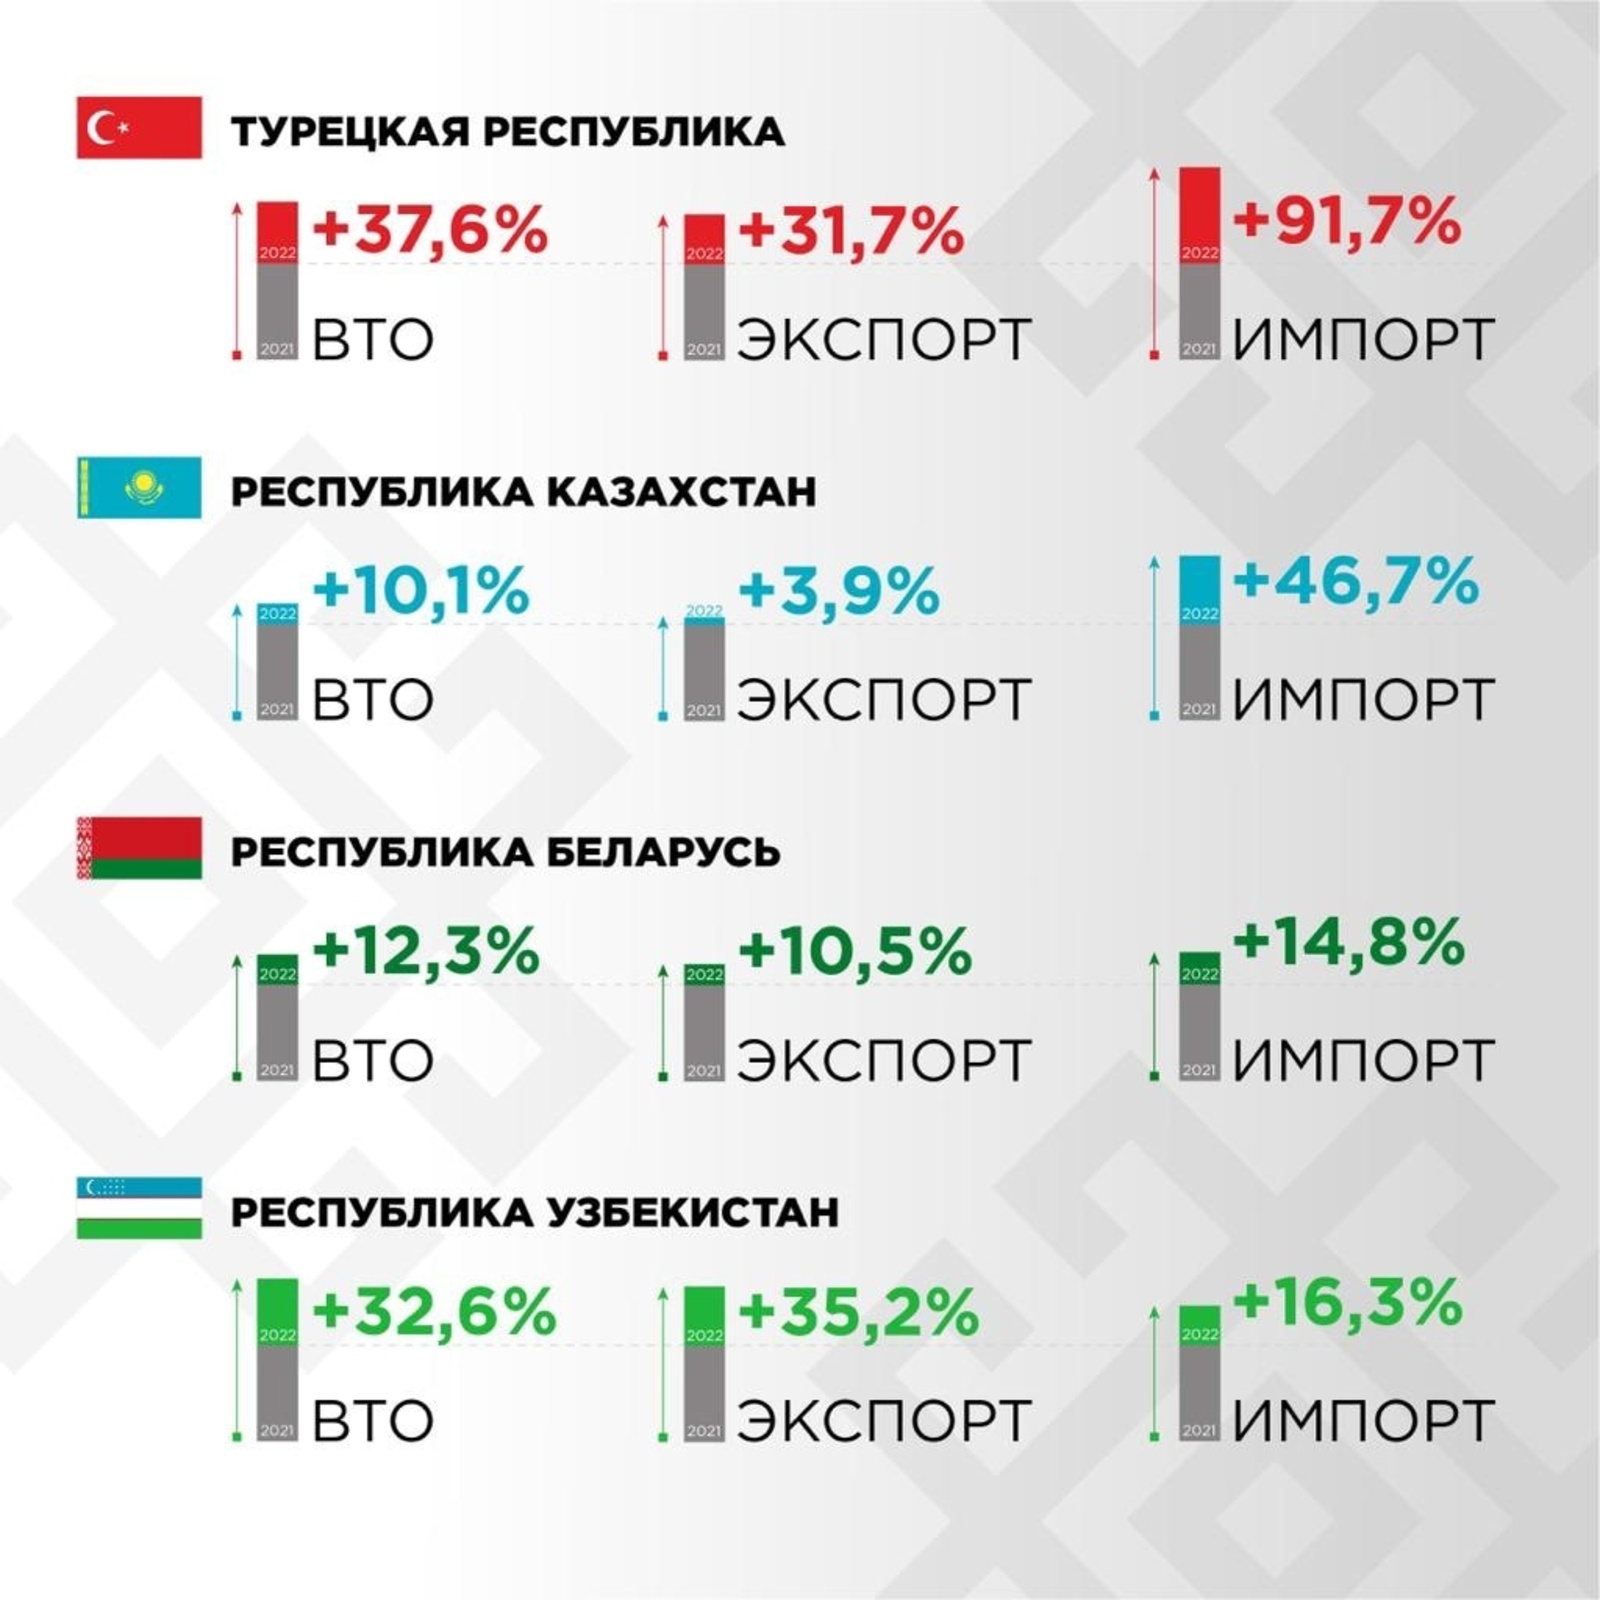 Результат участия  предприятий Башкортостана в бизнес-миссиях впечатляет!